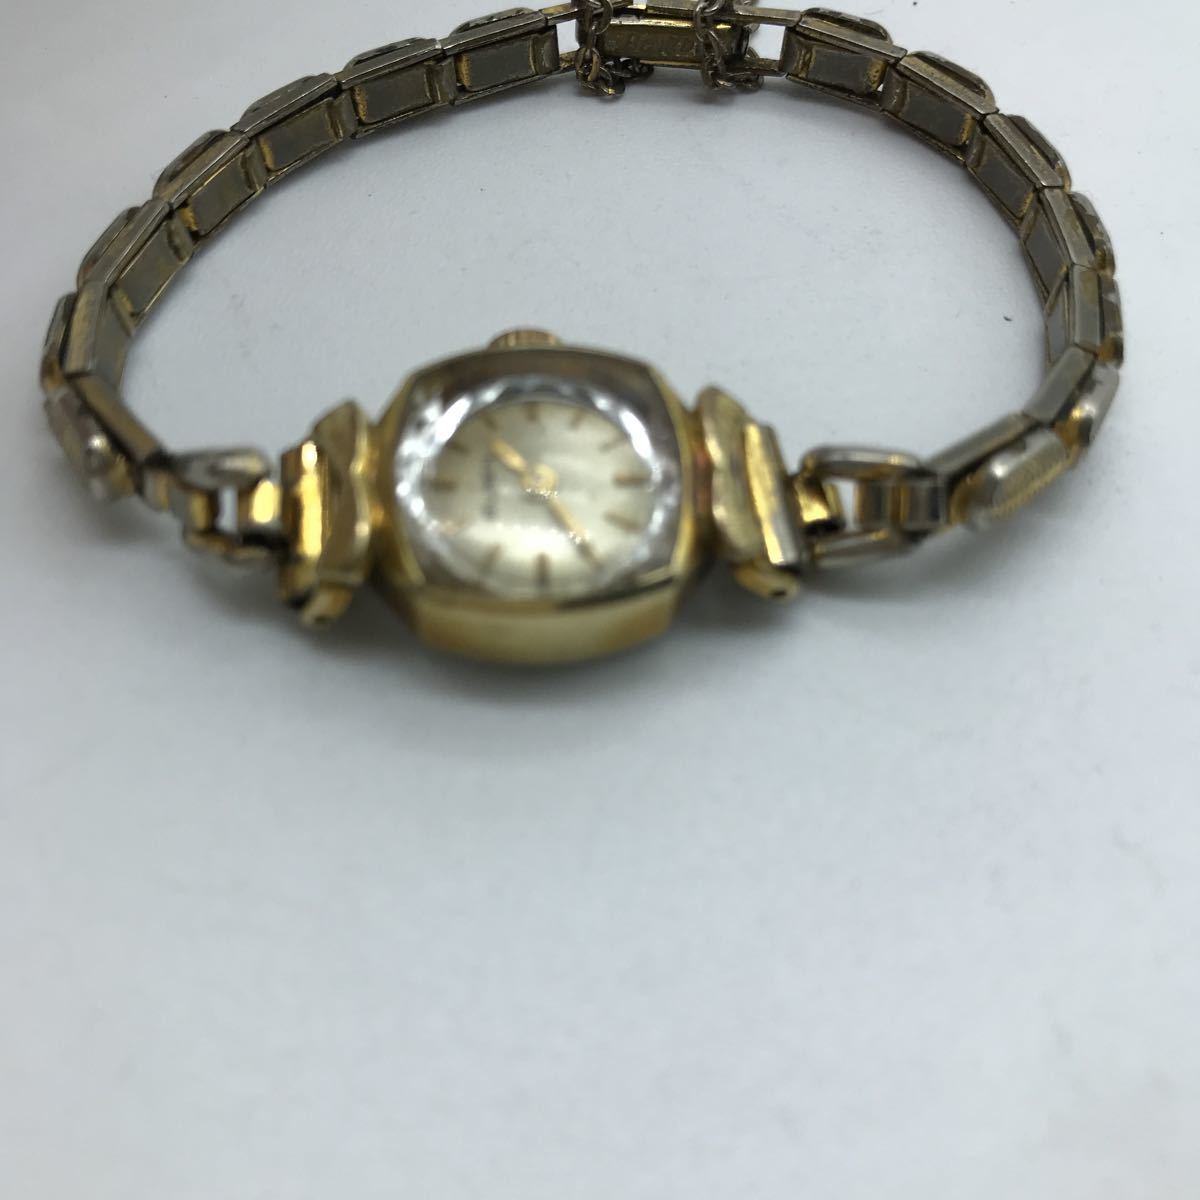 BUREN вид Len женский механический завод наручные часы Gold античный Vintage рабочий товар 